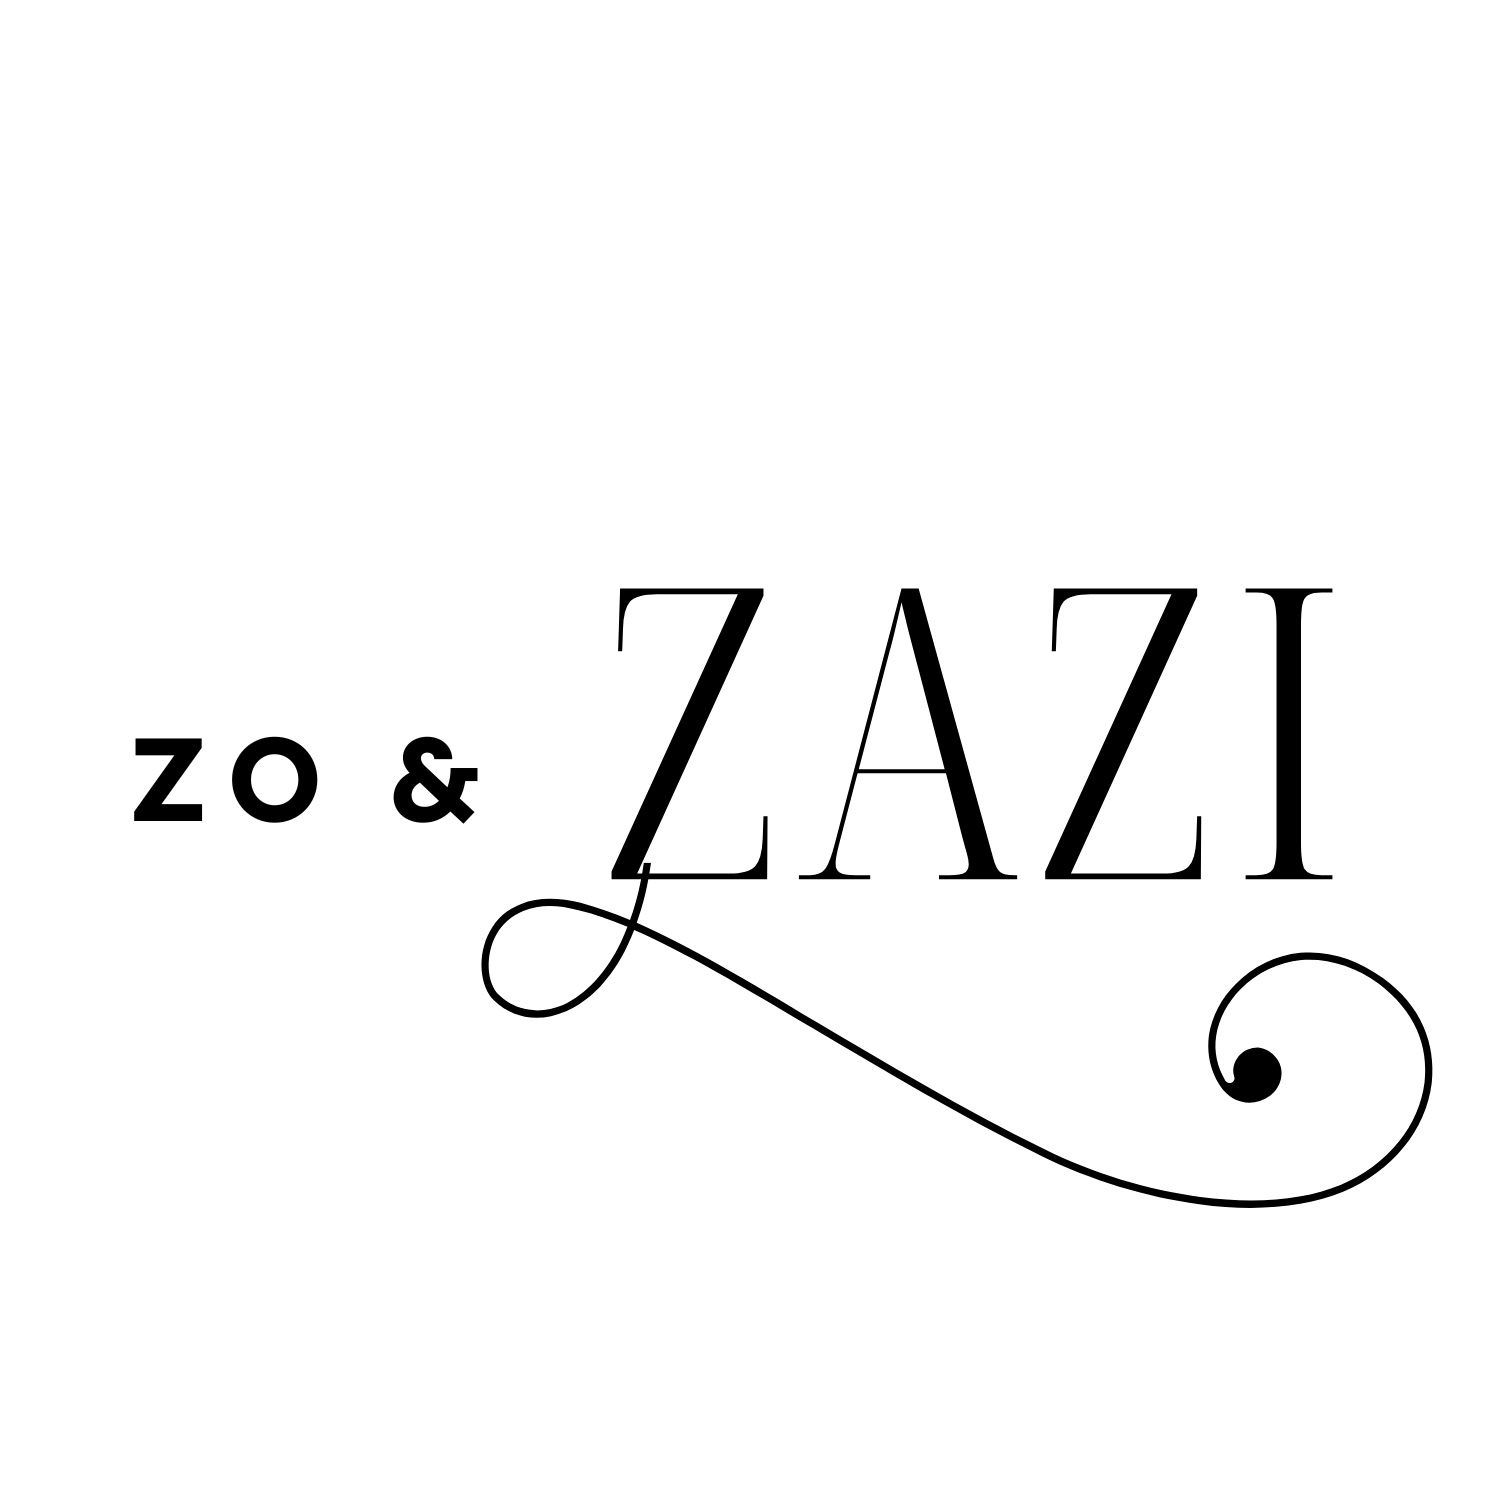 Zo&Zazi